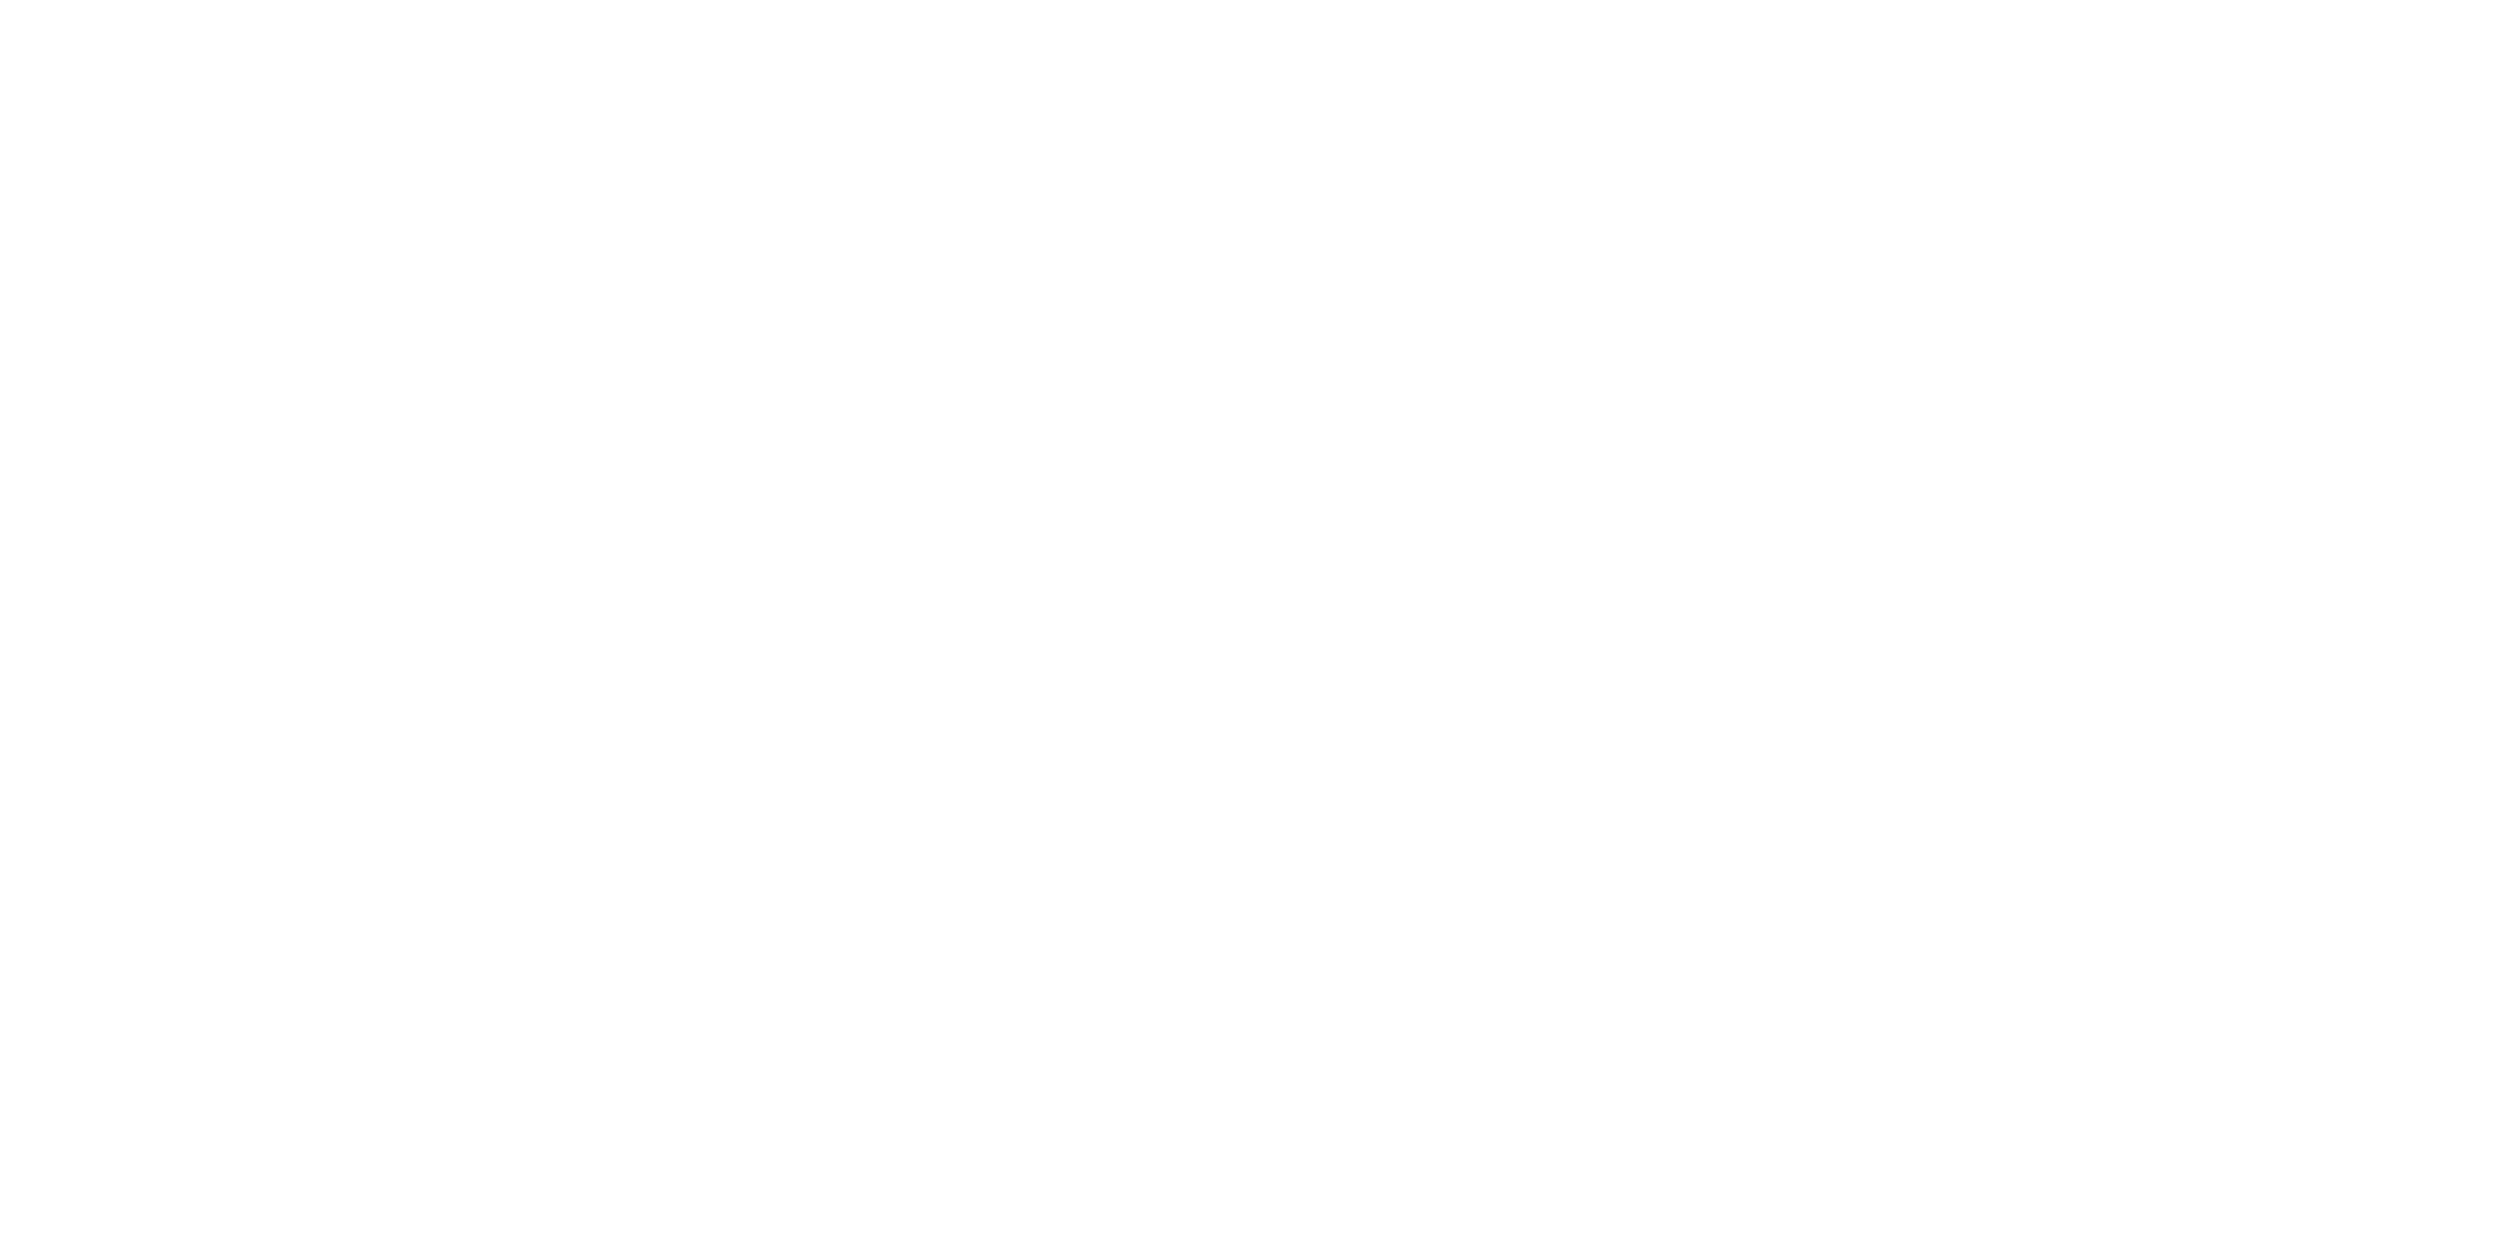 Wayne Leckie